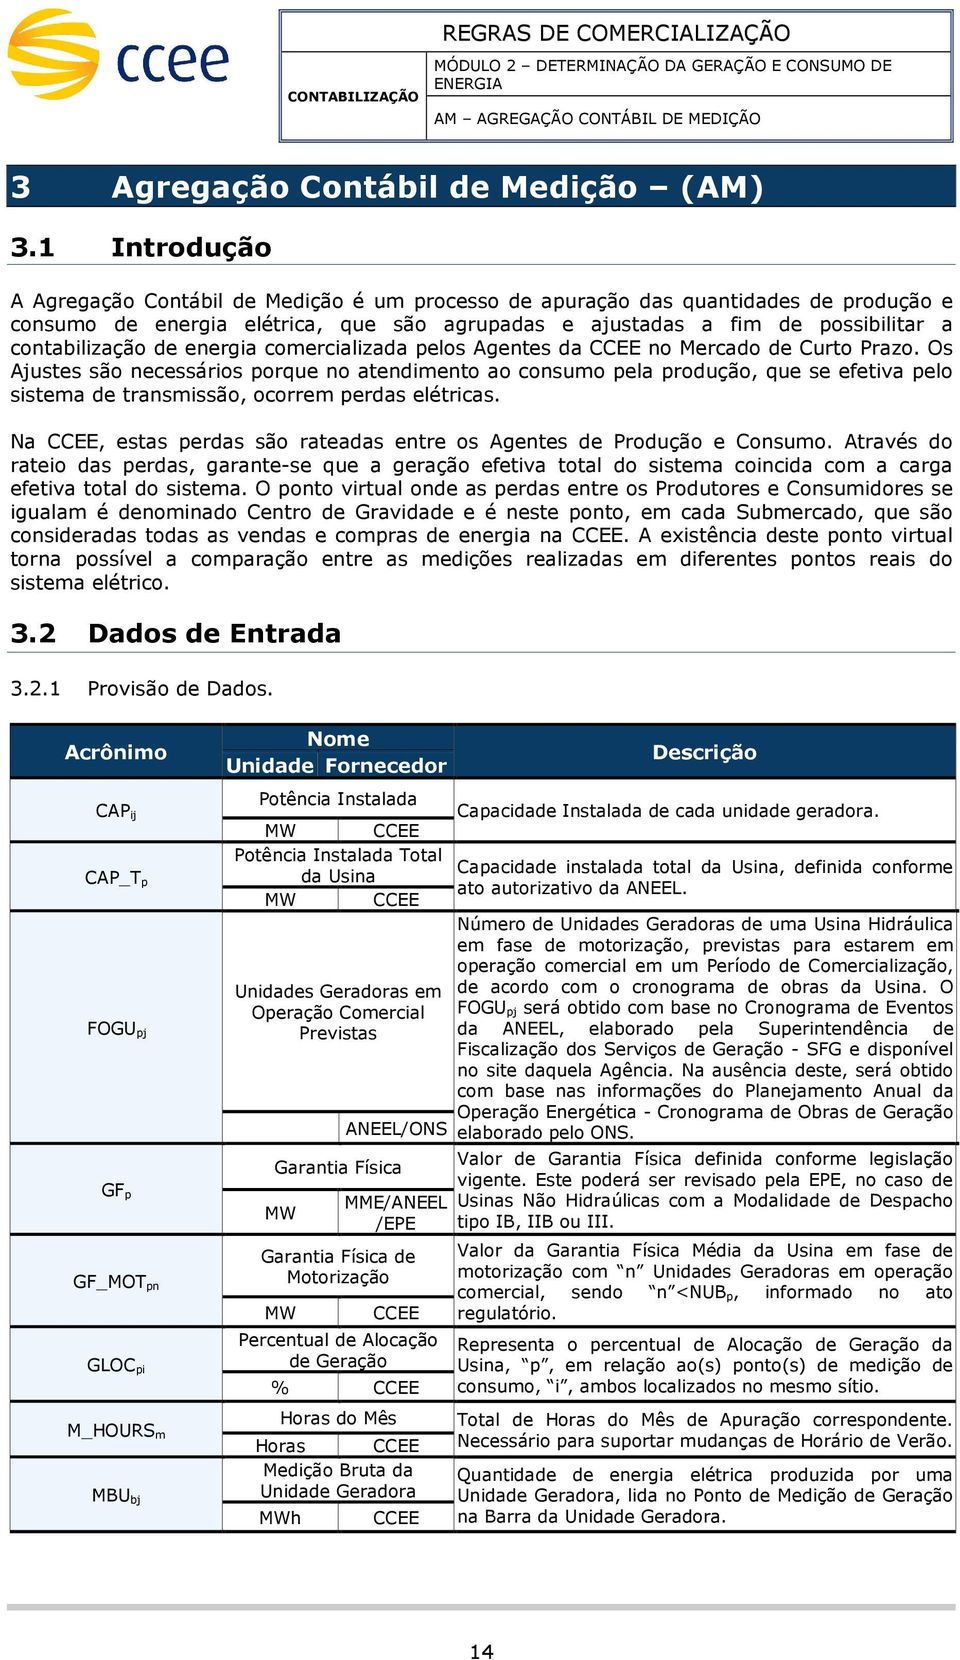 energia coercializada elos Agentes da CCEE no Mercado de Curto Prazo.